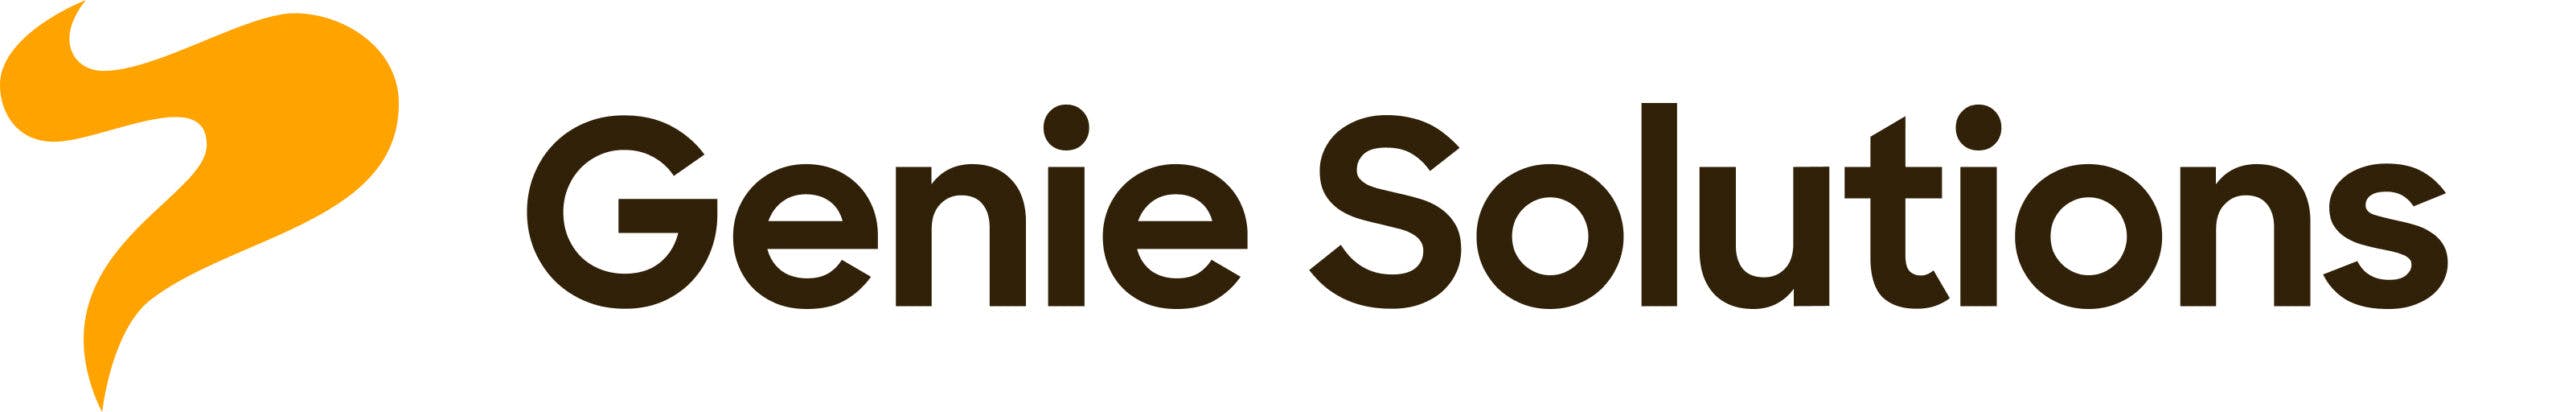 Genie Solutions logo – Copy